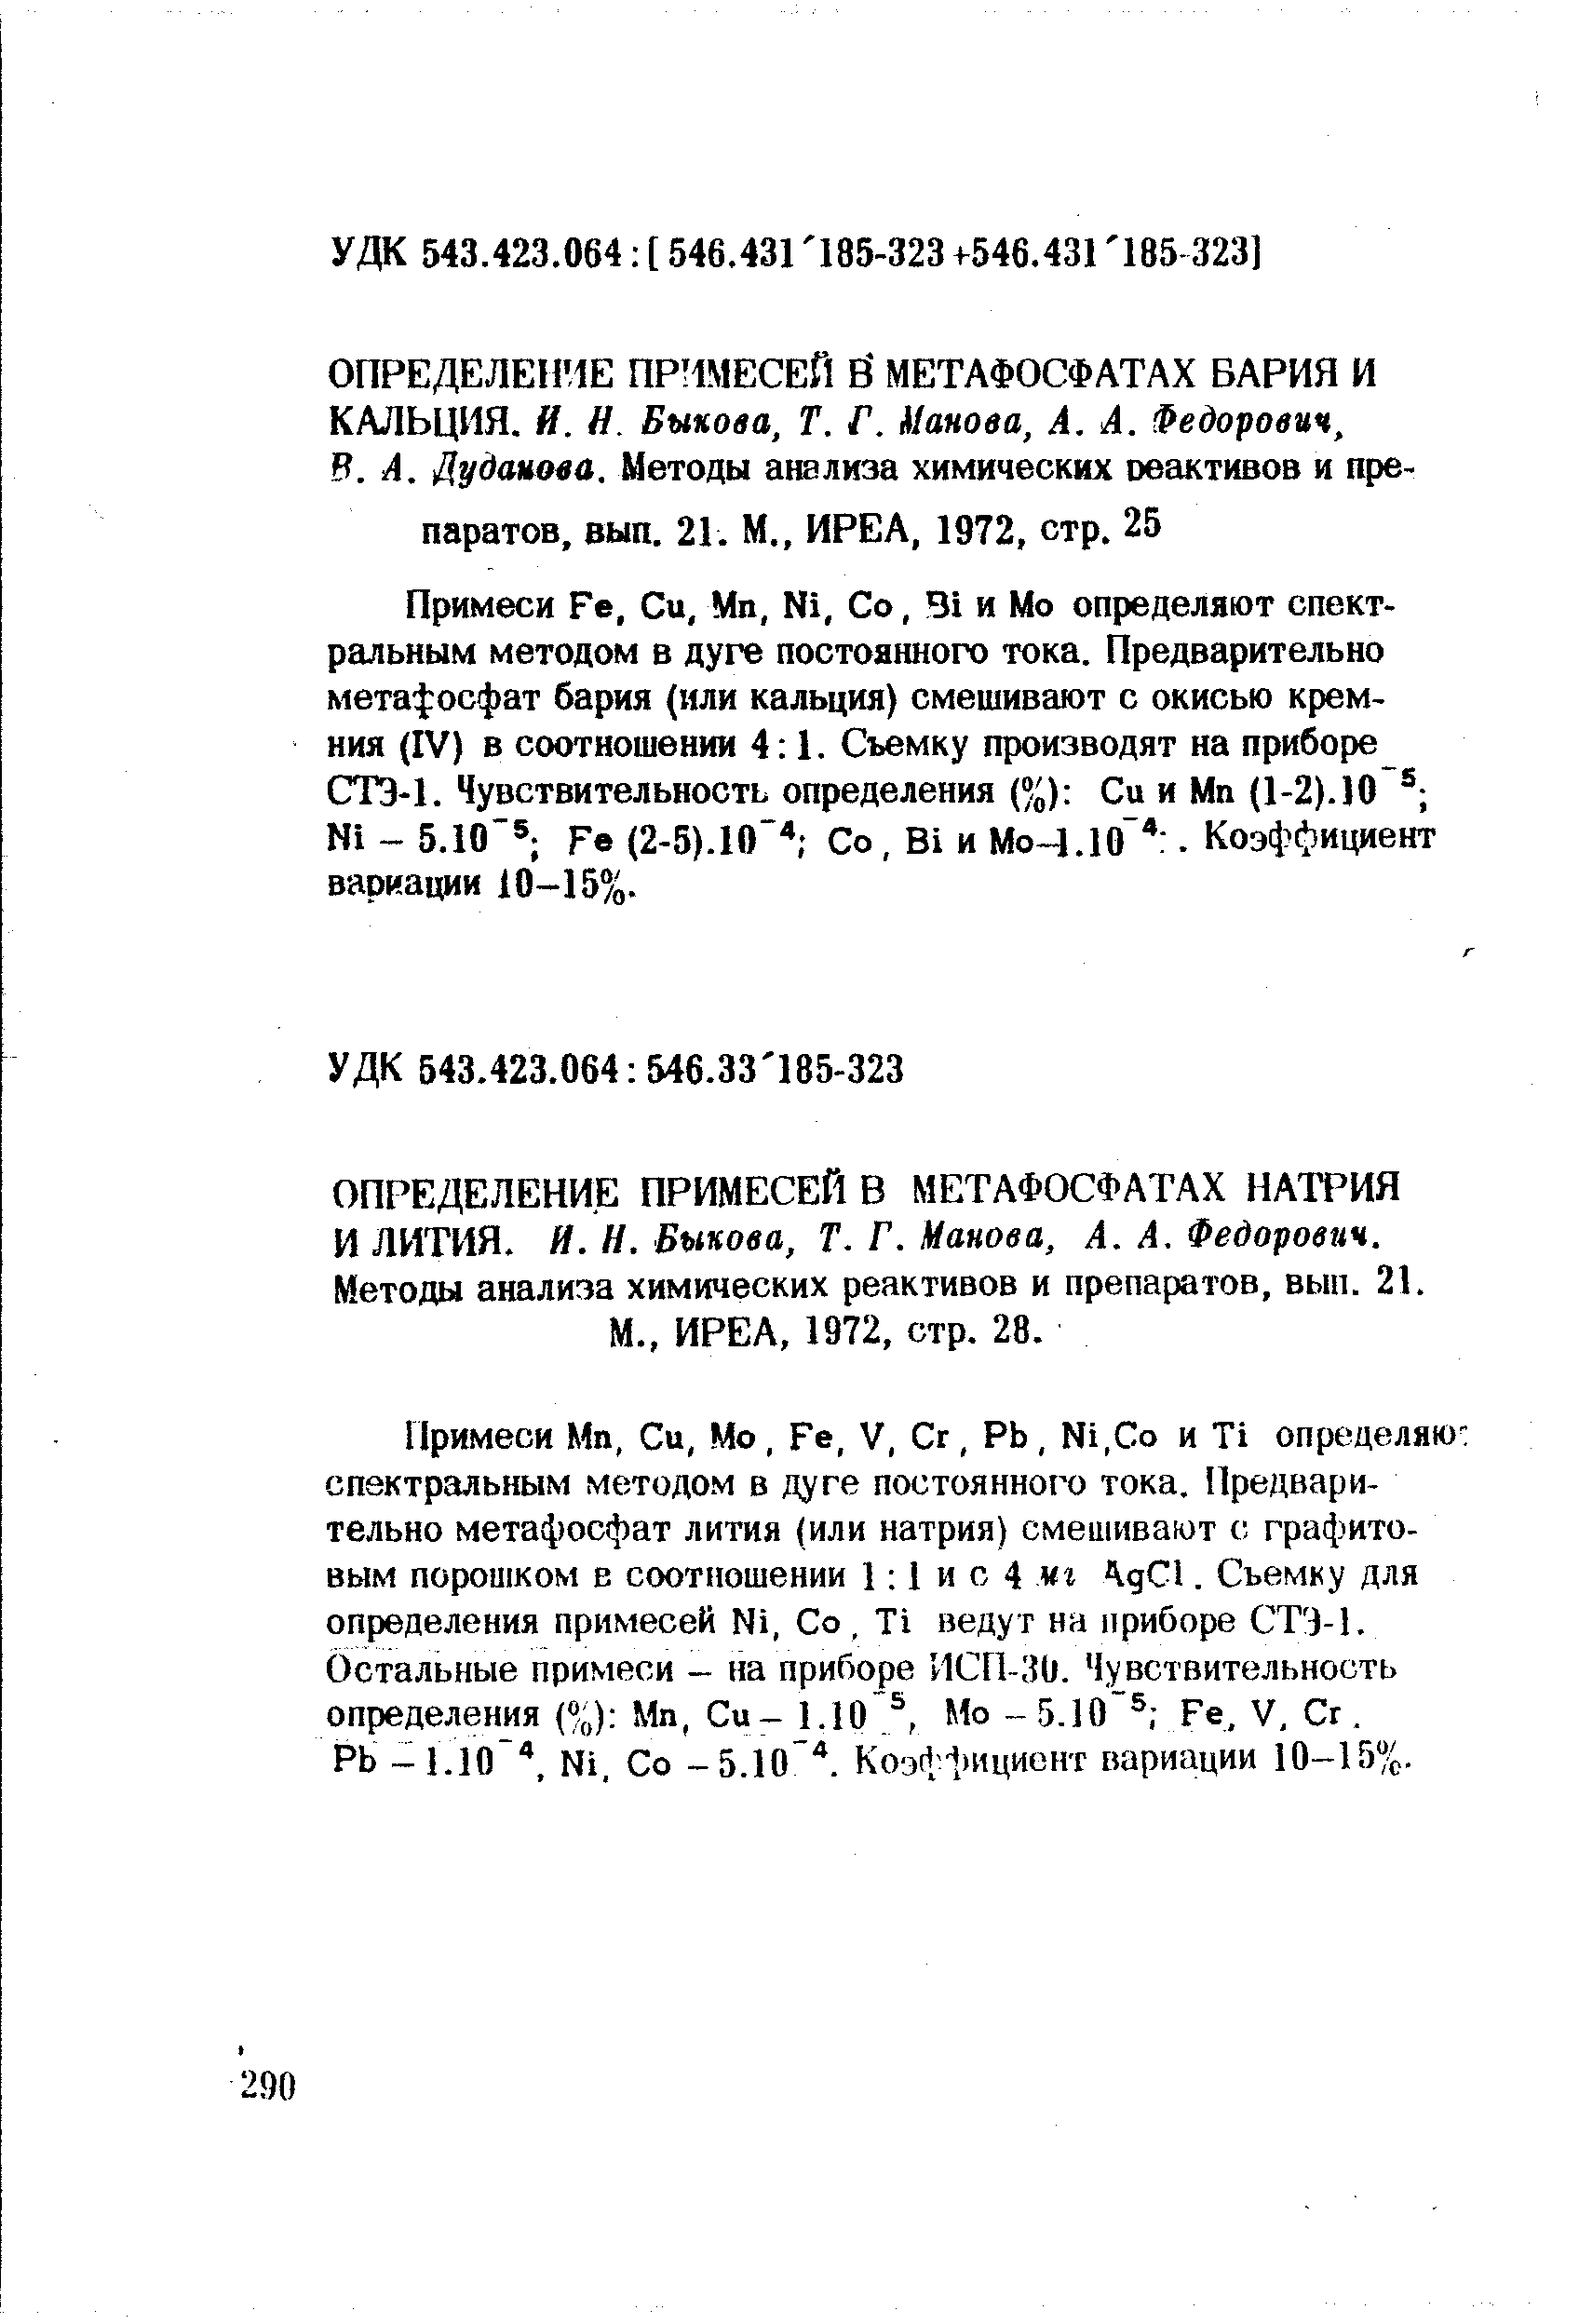 Примеси Ге, Си, Мп, N1, Со, и Мо определяют спектральным методом в дуге постоянного тока. Предварительно метафосфат бария (или кальция) смешивают с окисью кремния (IV) в соотношении 4 1. Съемку производят на приборе СТЭ-1. Чувствительность определения (%) Си и Мп (1-2).10 N1 - 5.10 Ге (2-5).10 Со, В1 и МоЧ.Ю . Коэффициент вариации 10-15%.